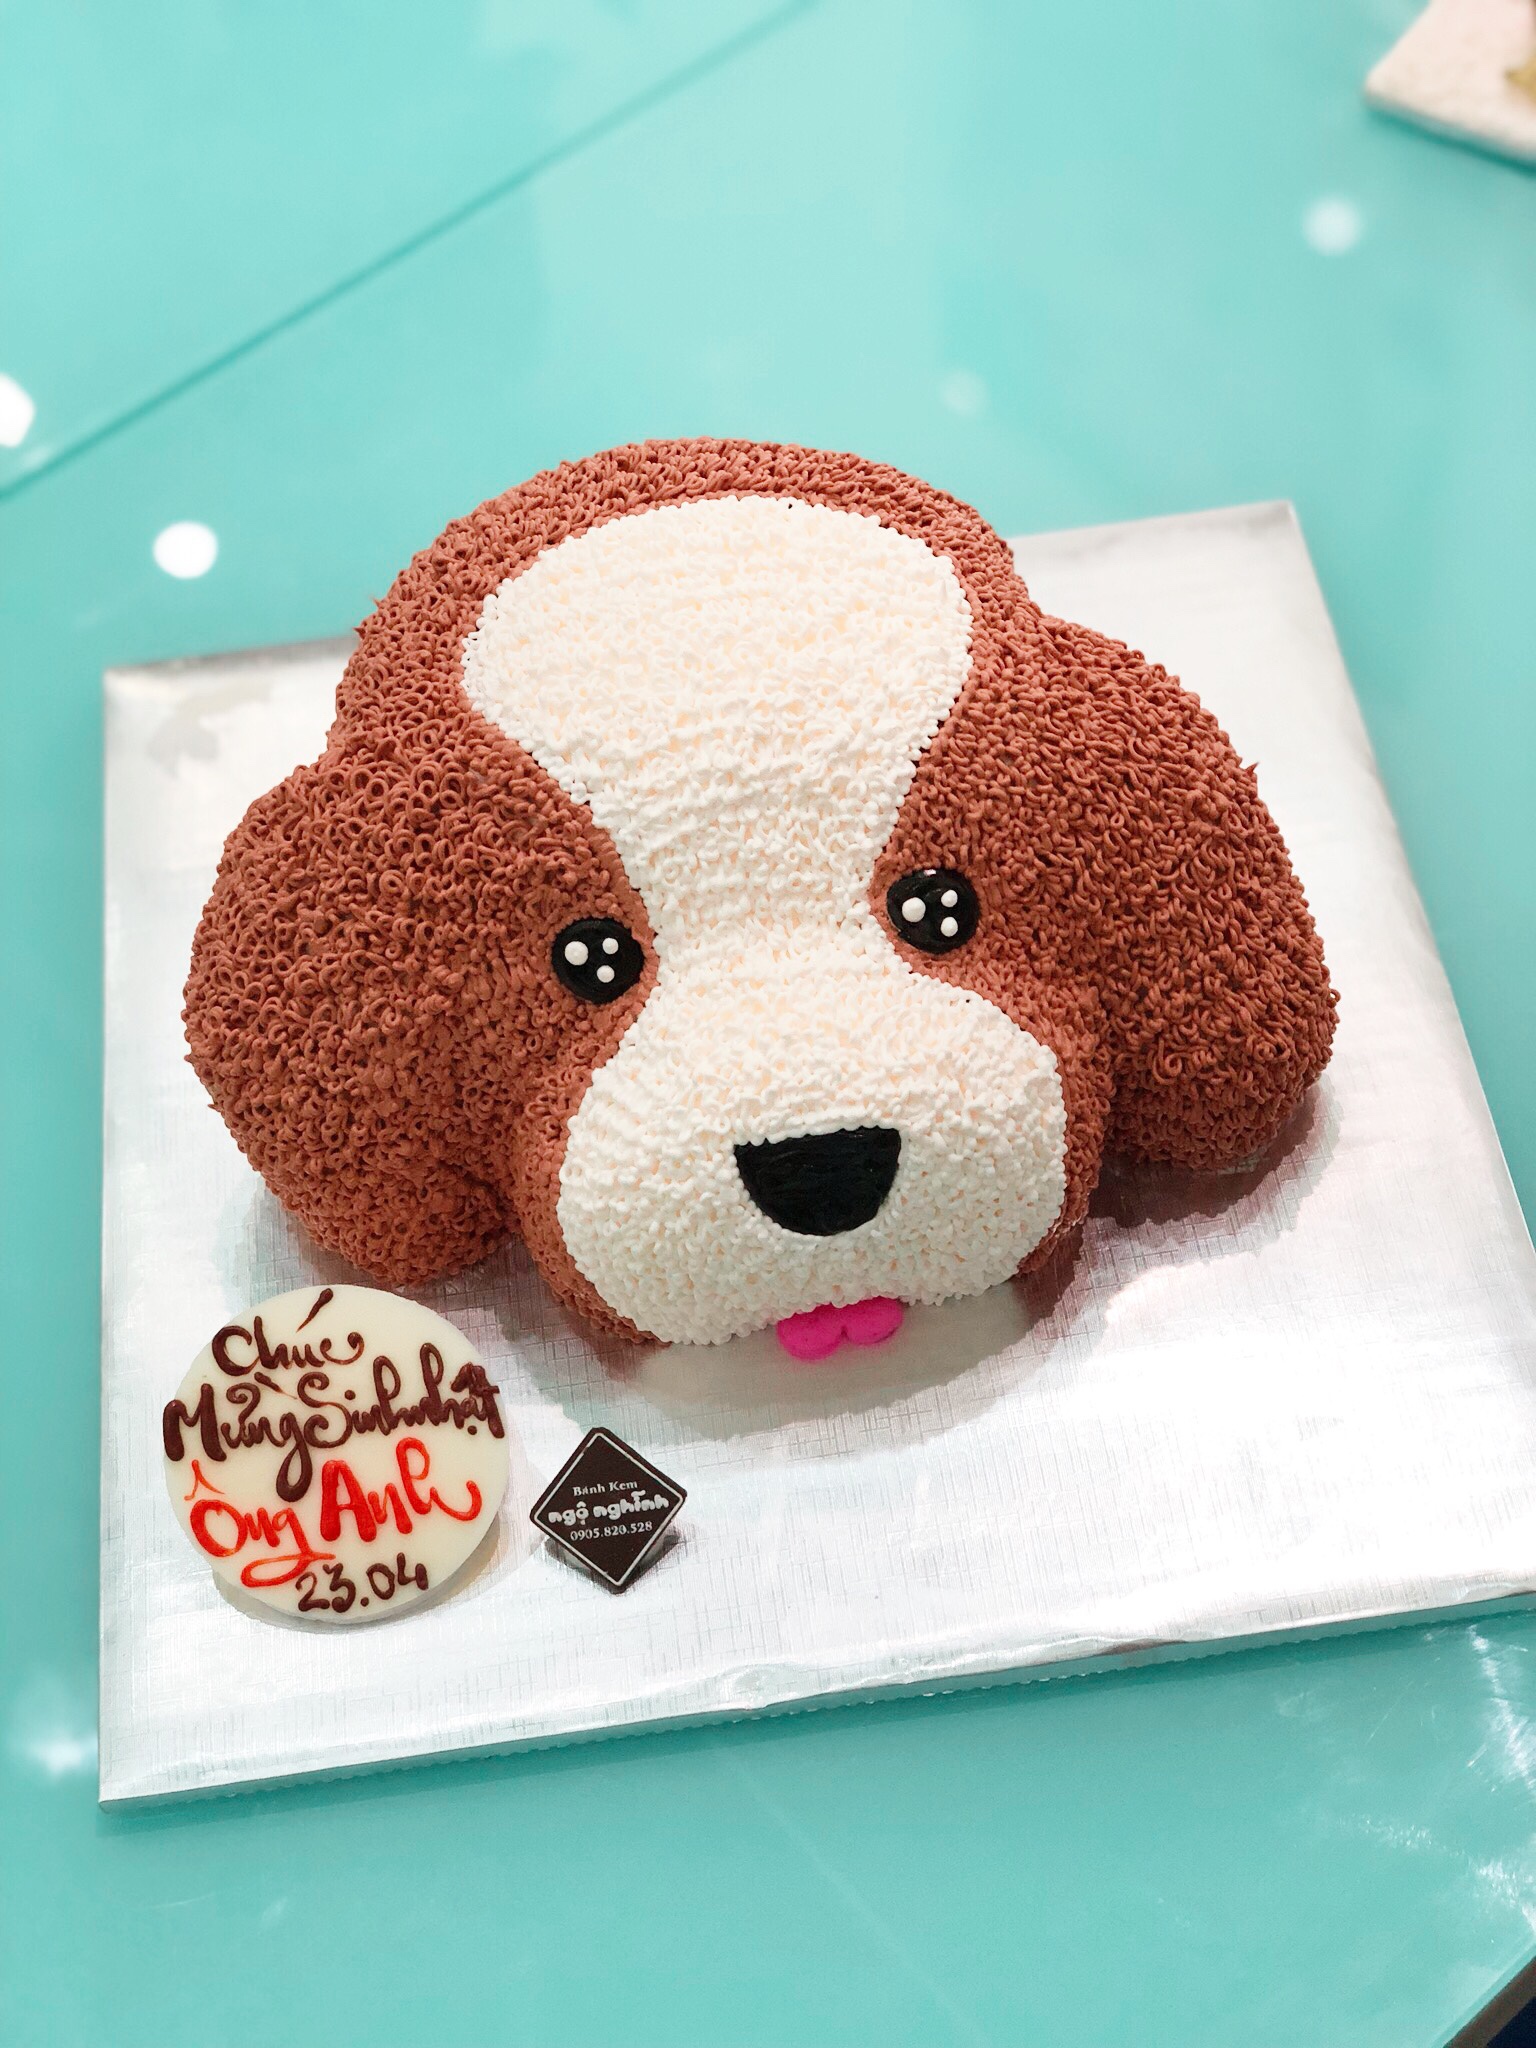 Tất cả tình cảm và sự quan tâm của bạn dành cho người thân sẽ được đúc kết trong chiếc bánh sinh nhật 3D mặt con chó tuyệt đẹp. Với hương vị ngọt ngào và tràn đầy sức sống, chiếc bánh này sẽ làm nổi bật bất kỳ đám sinh nhật nào. Chúc mừng sinh nhật với chiếc bánh đậm chất yêu thương này!